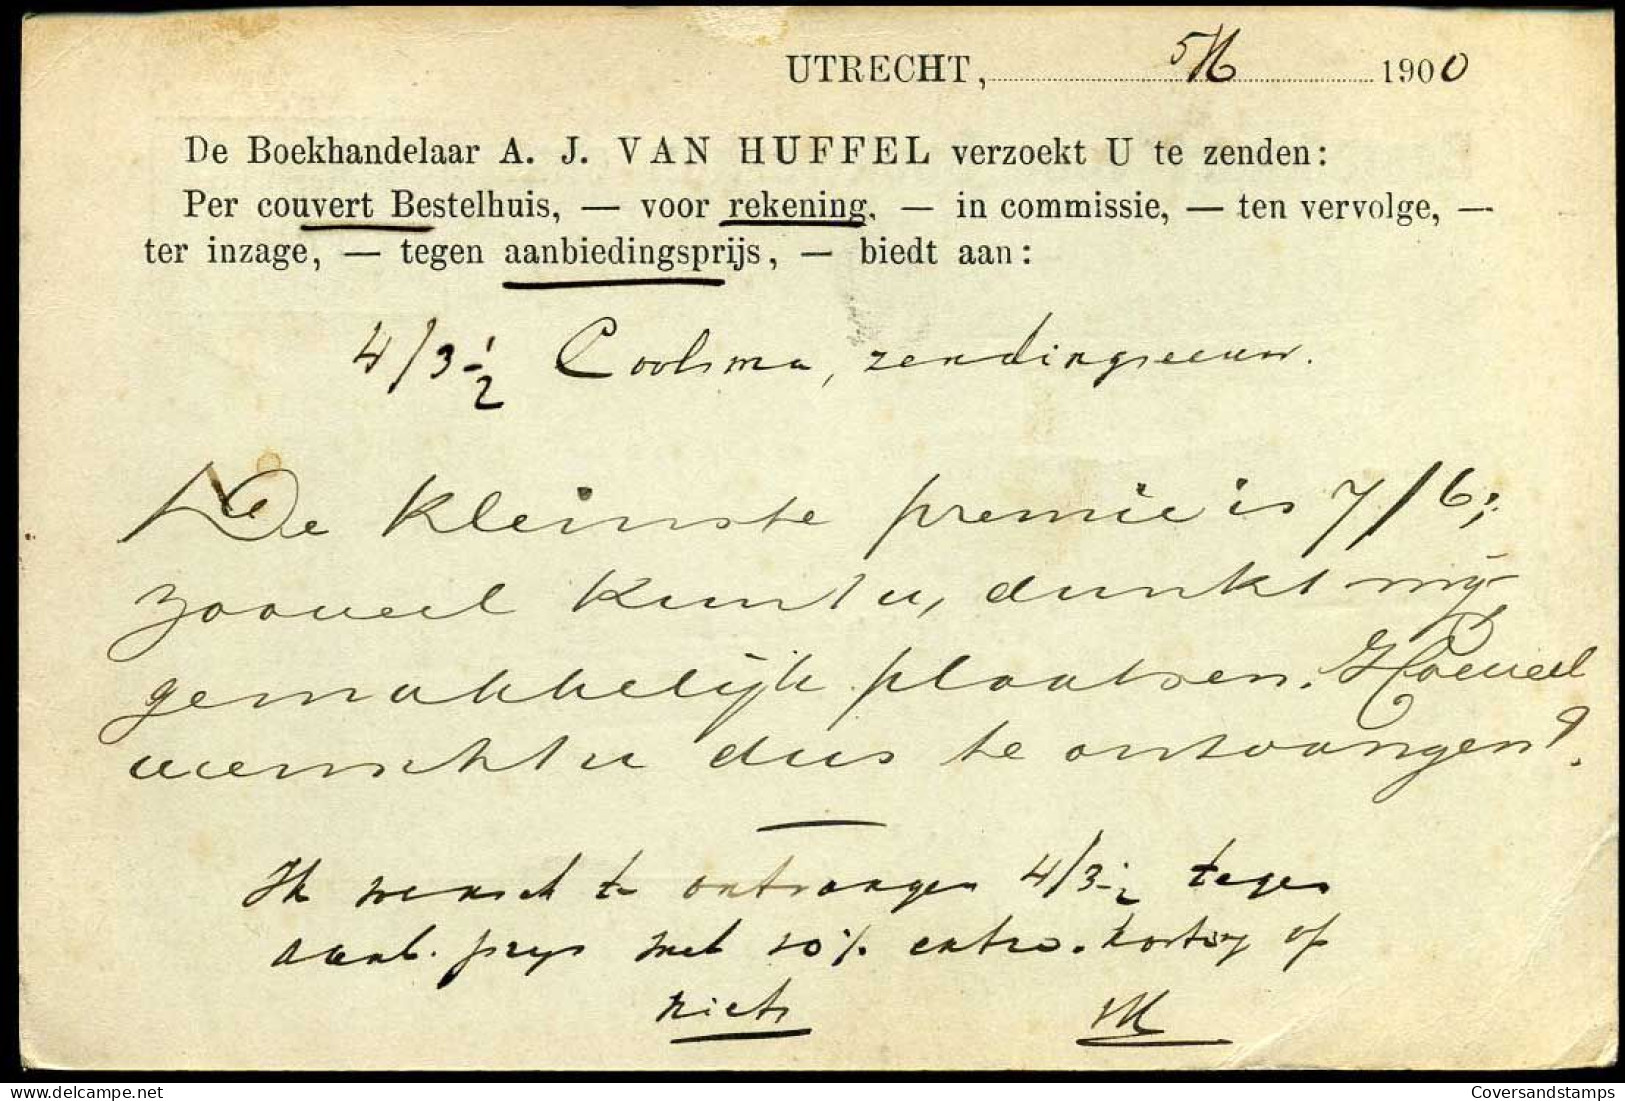 Bestelkaart Voor Boekwerken Enz. - "A.J. Van Huffel, Utrecht" - Cartas & Documentos